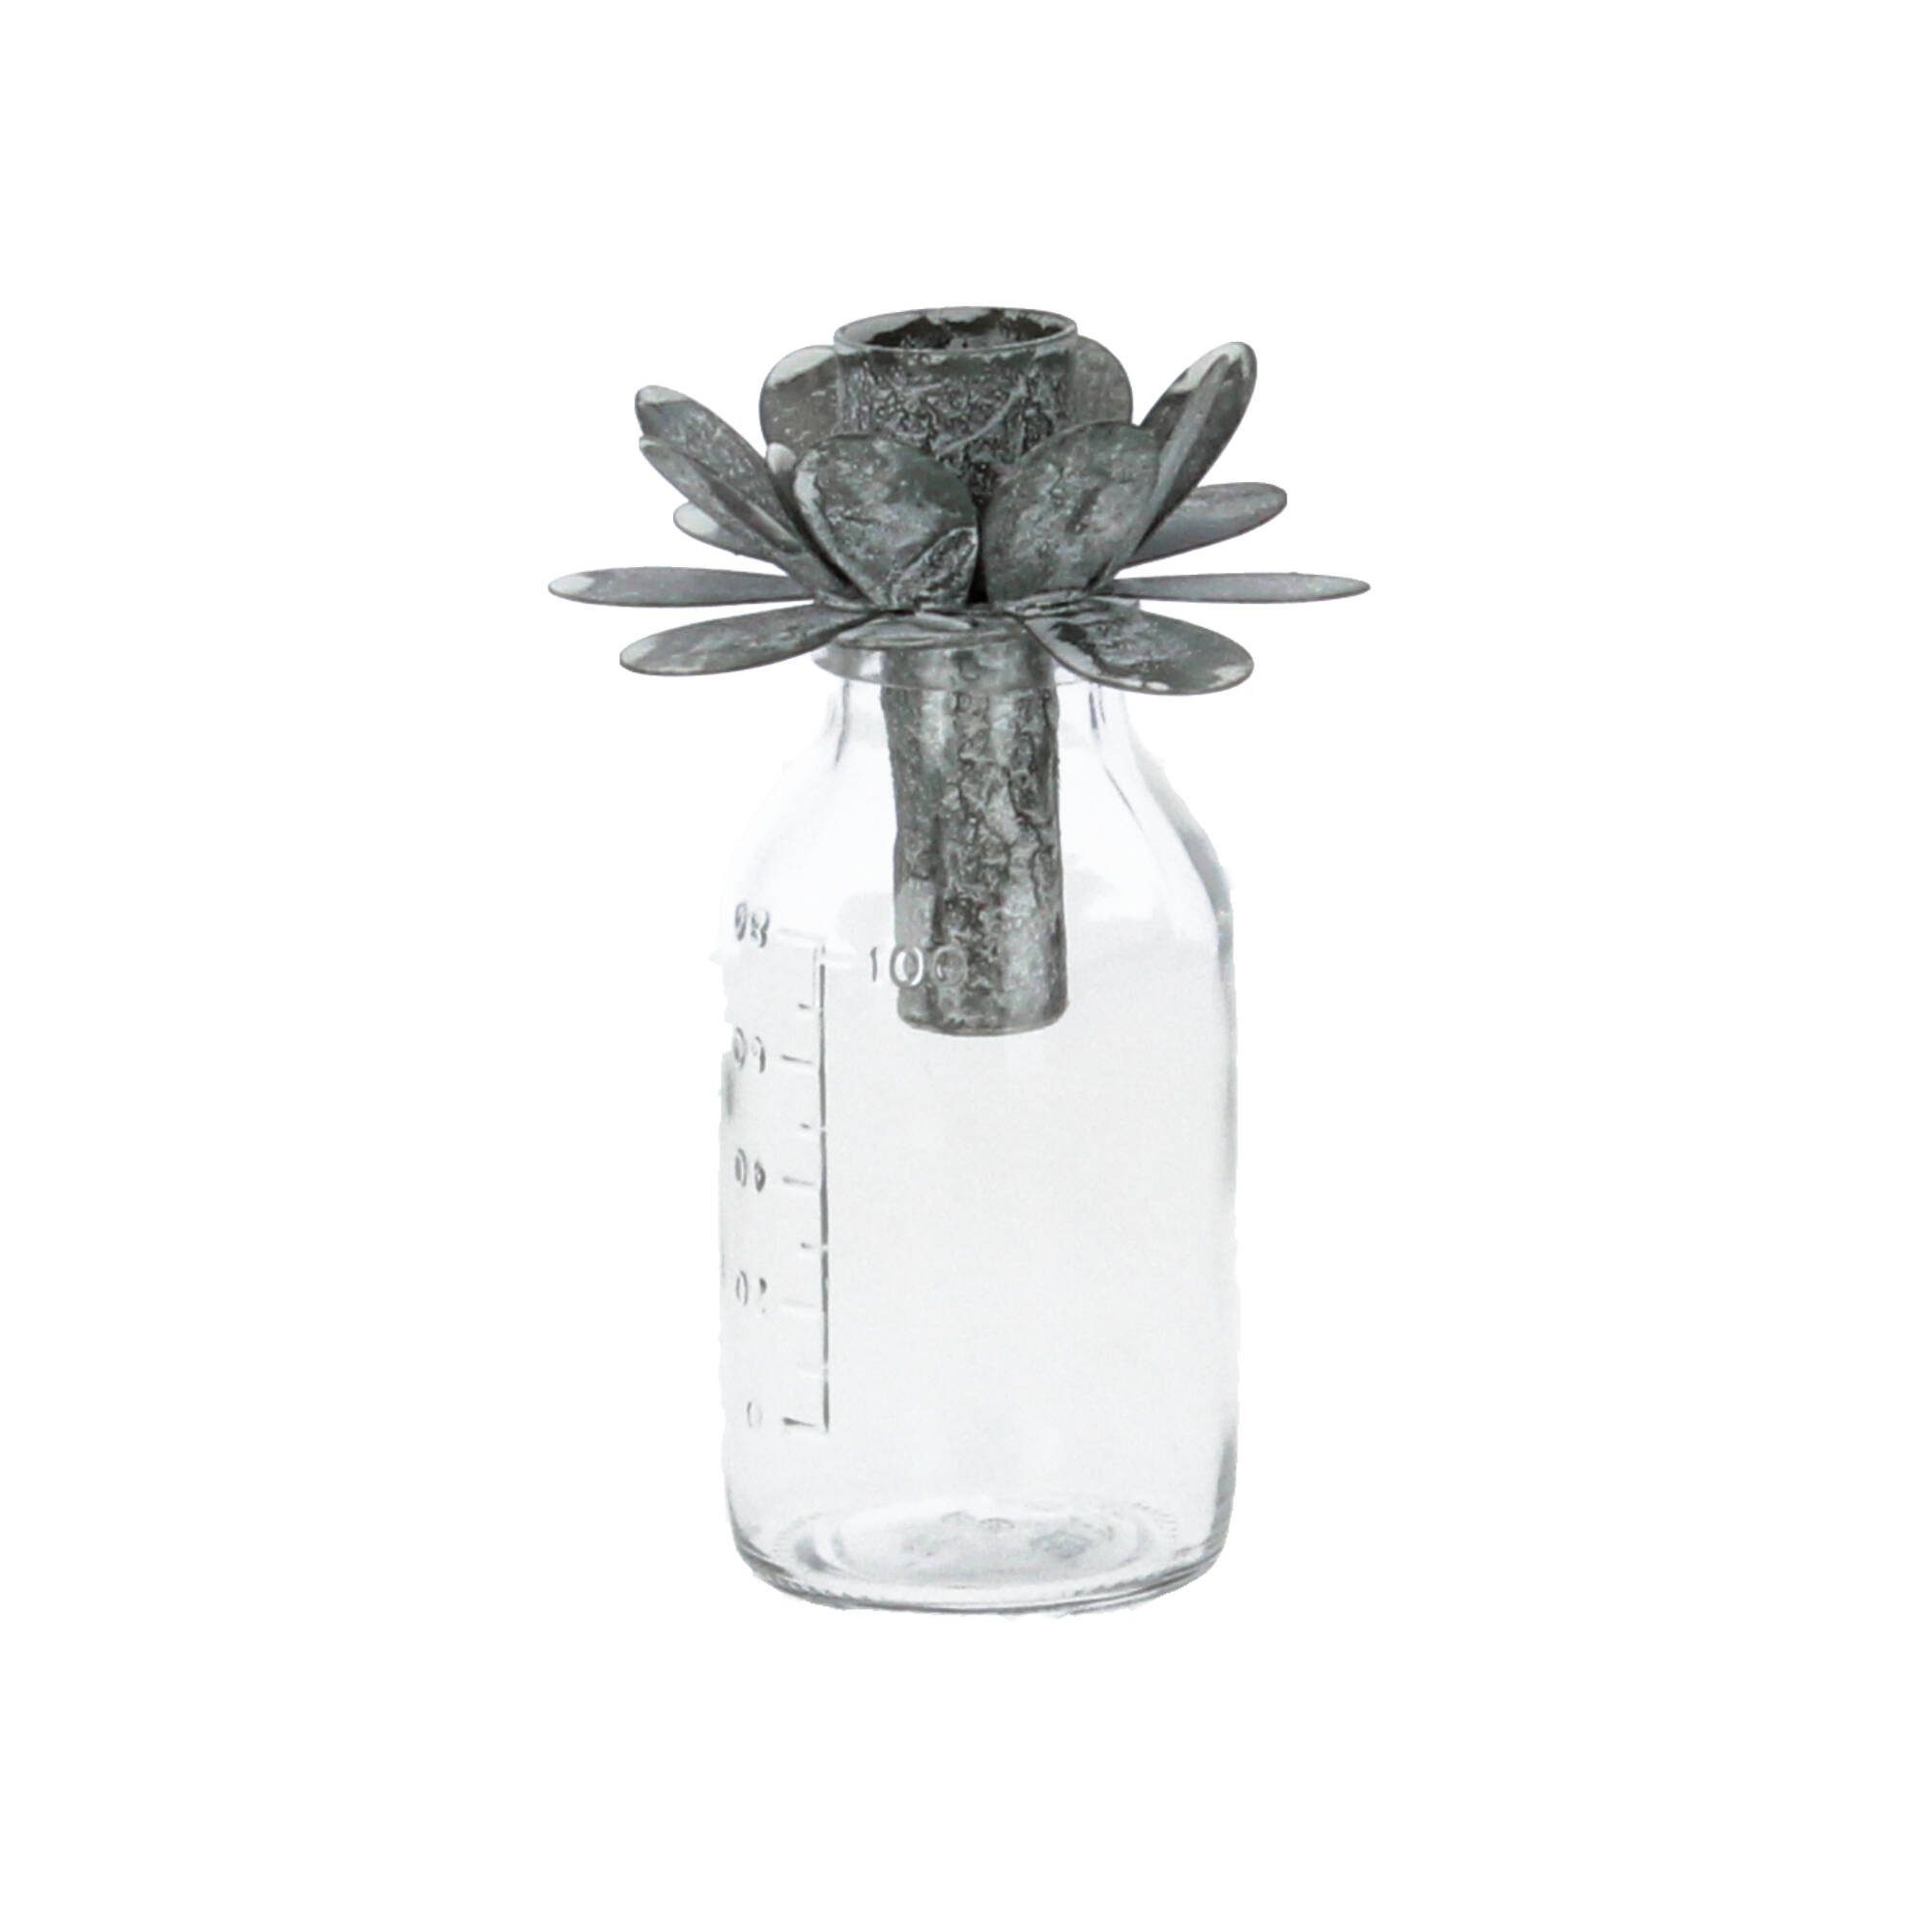 H13 (1 Antique cm Kerzenhalter Blume antique Kerzenhalter Chic zink mit St)